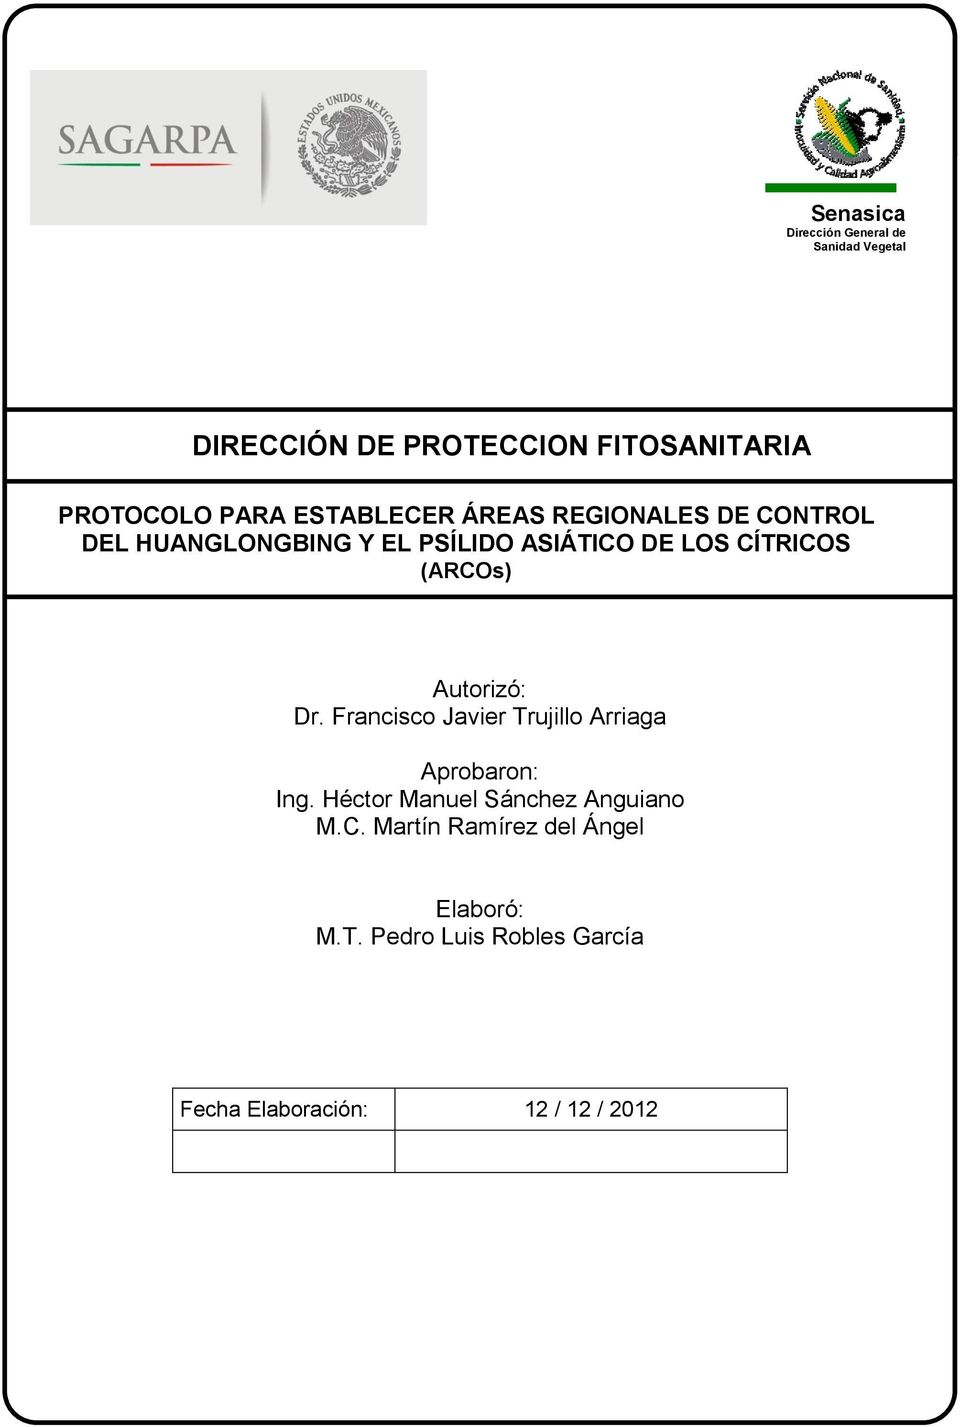 Francisco Javier Trujillo Arriaga Aprobaron: Ing. Héctor Manuel Sánchez Anguiano M.